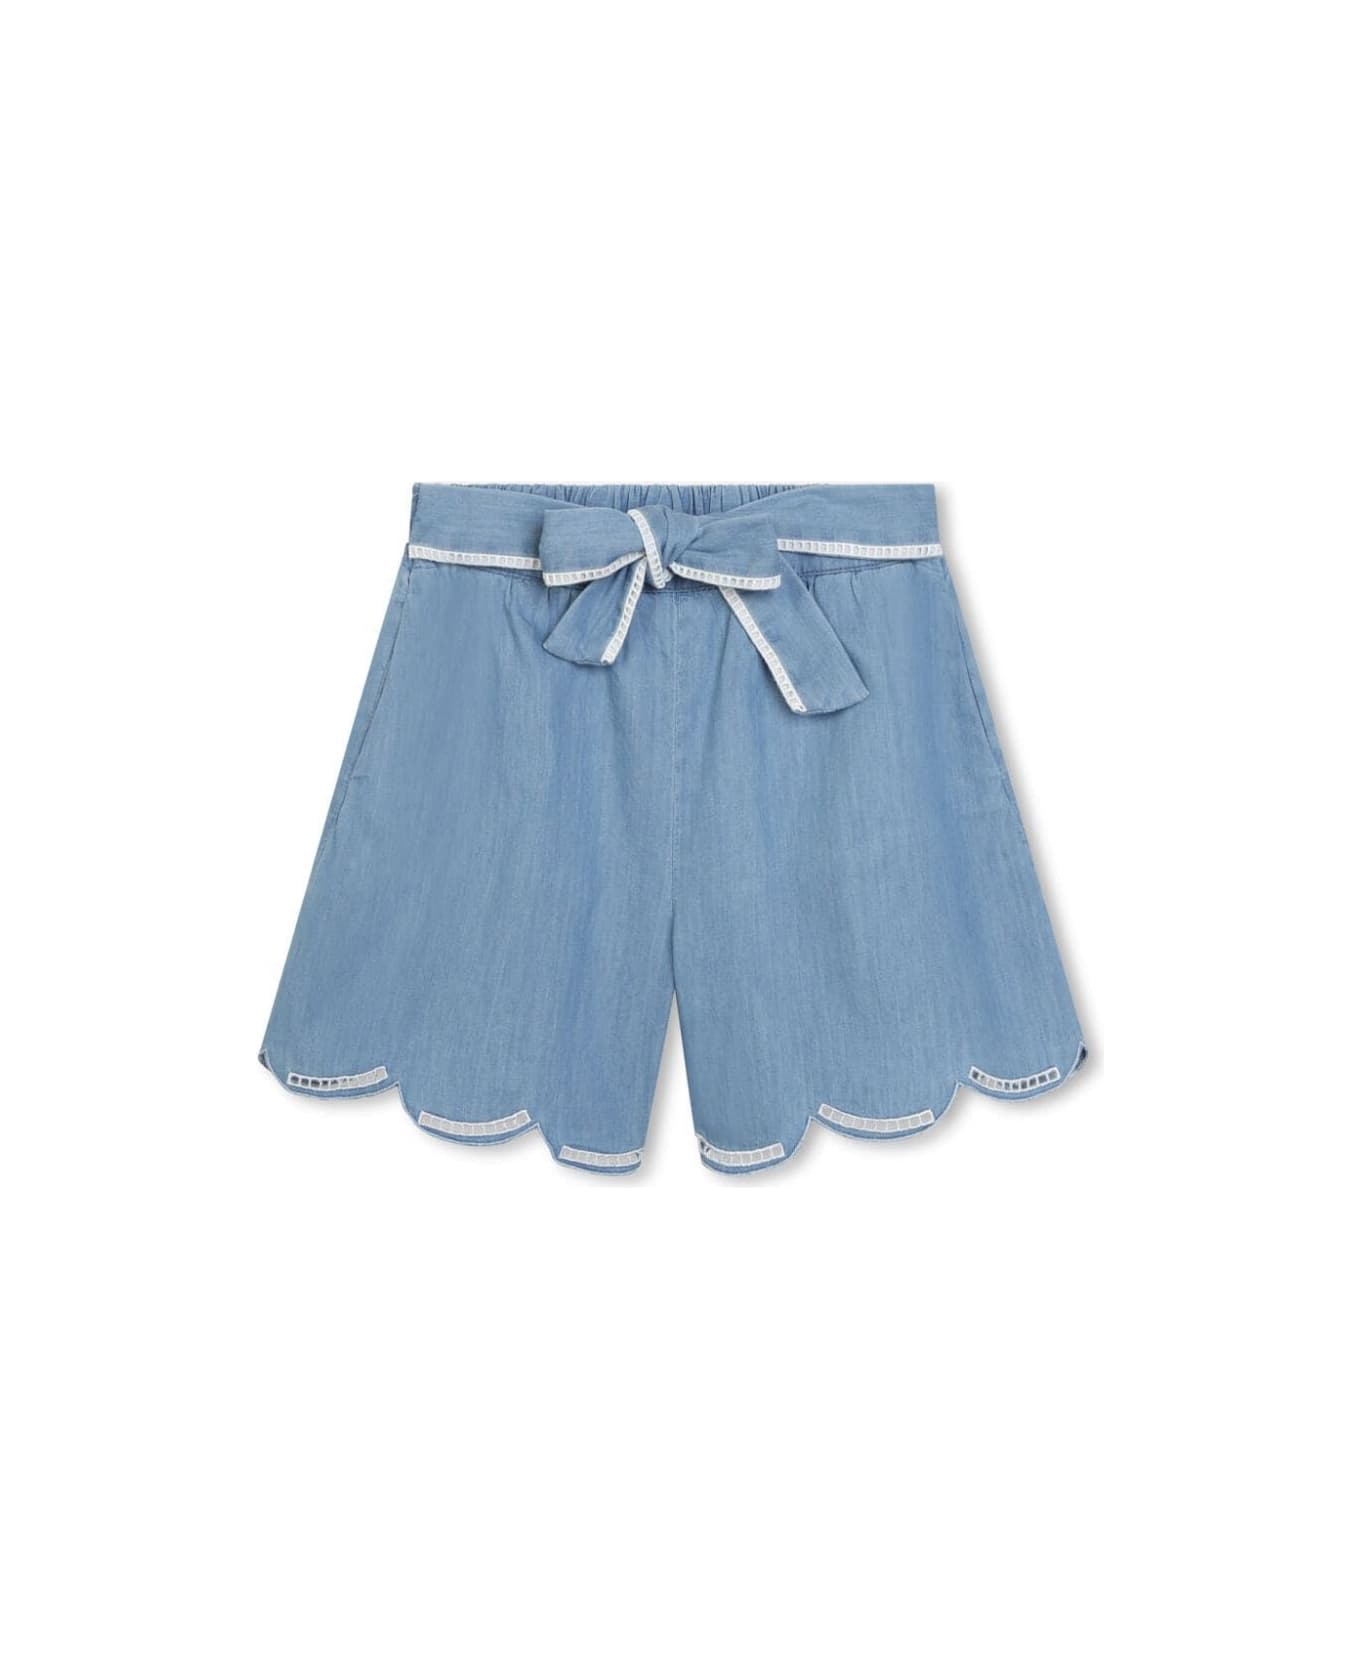 Chloé Denim Shorts - Denim Blue